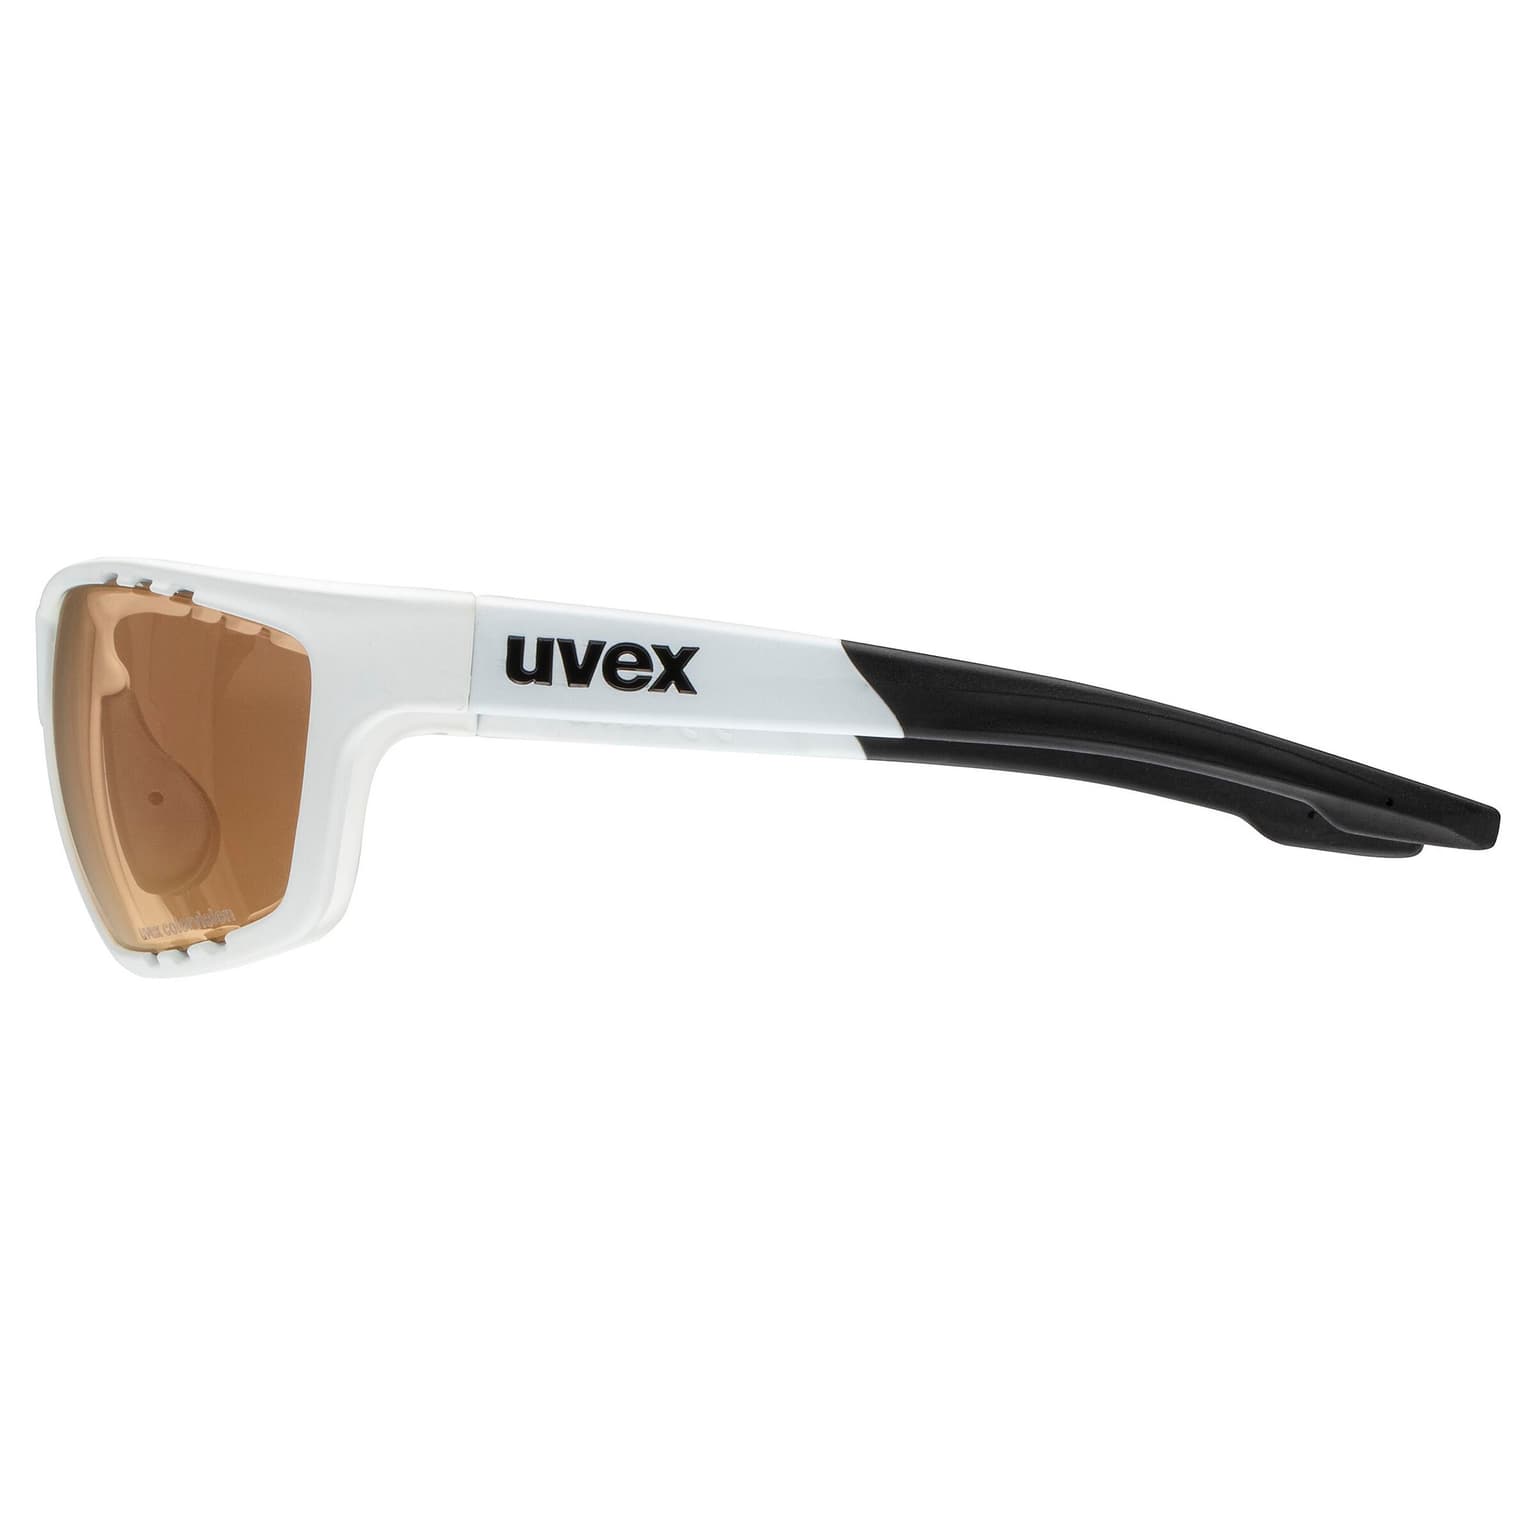 Uvex Uvex Colorvision Lunettes de sport blanc 2